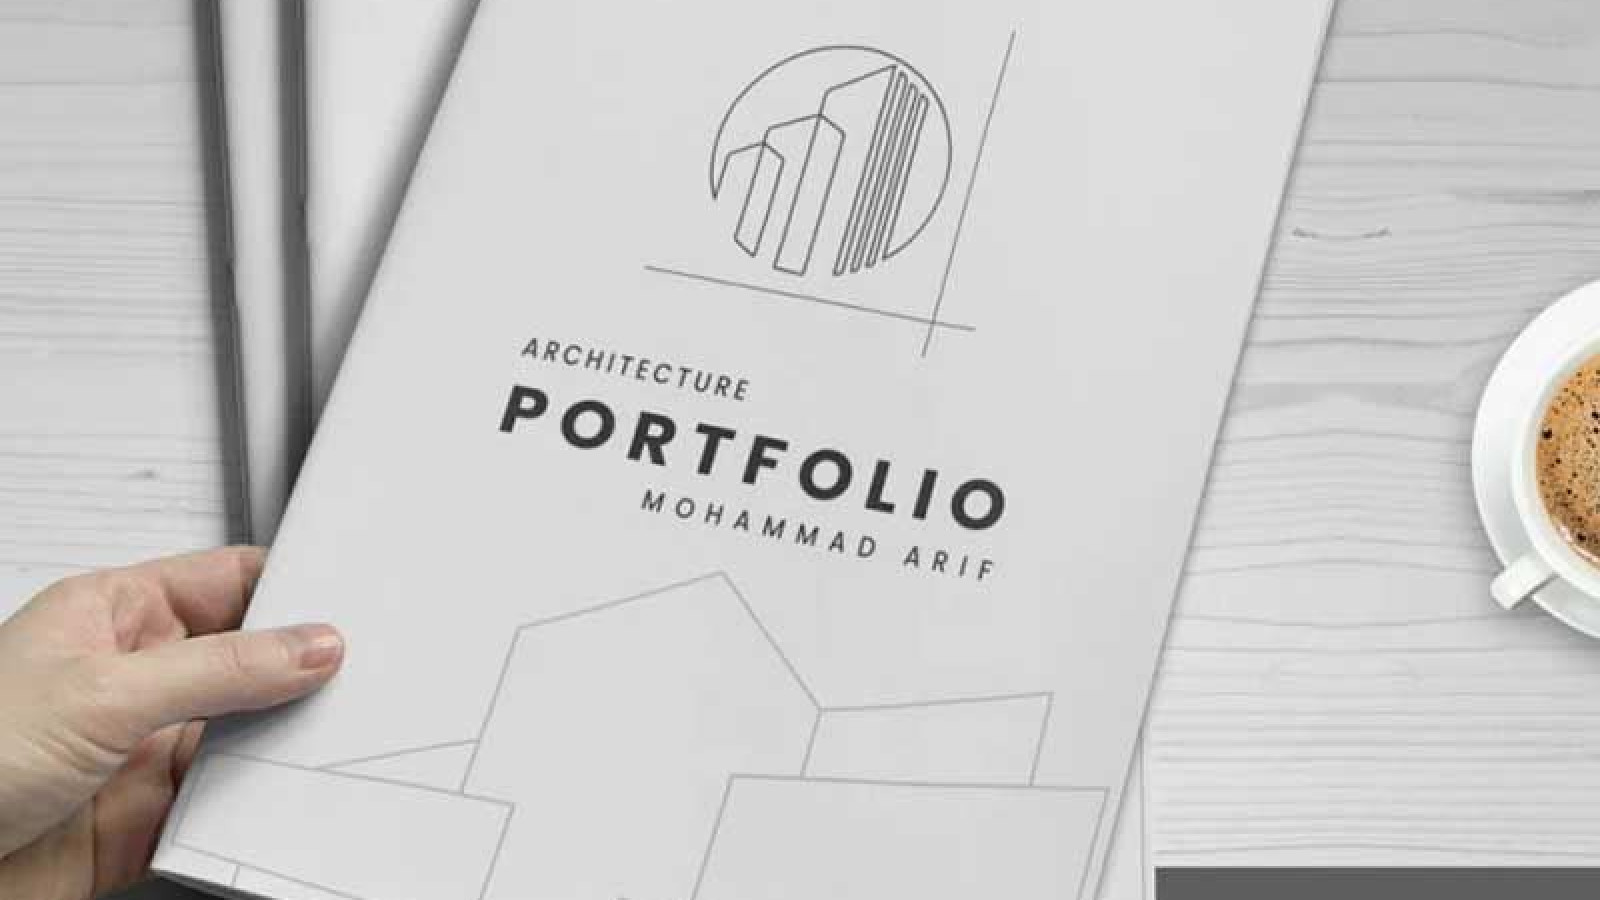 چگونه پورتفولیو معماری حرفه ای طراحی کنیم؟!